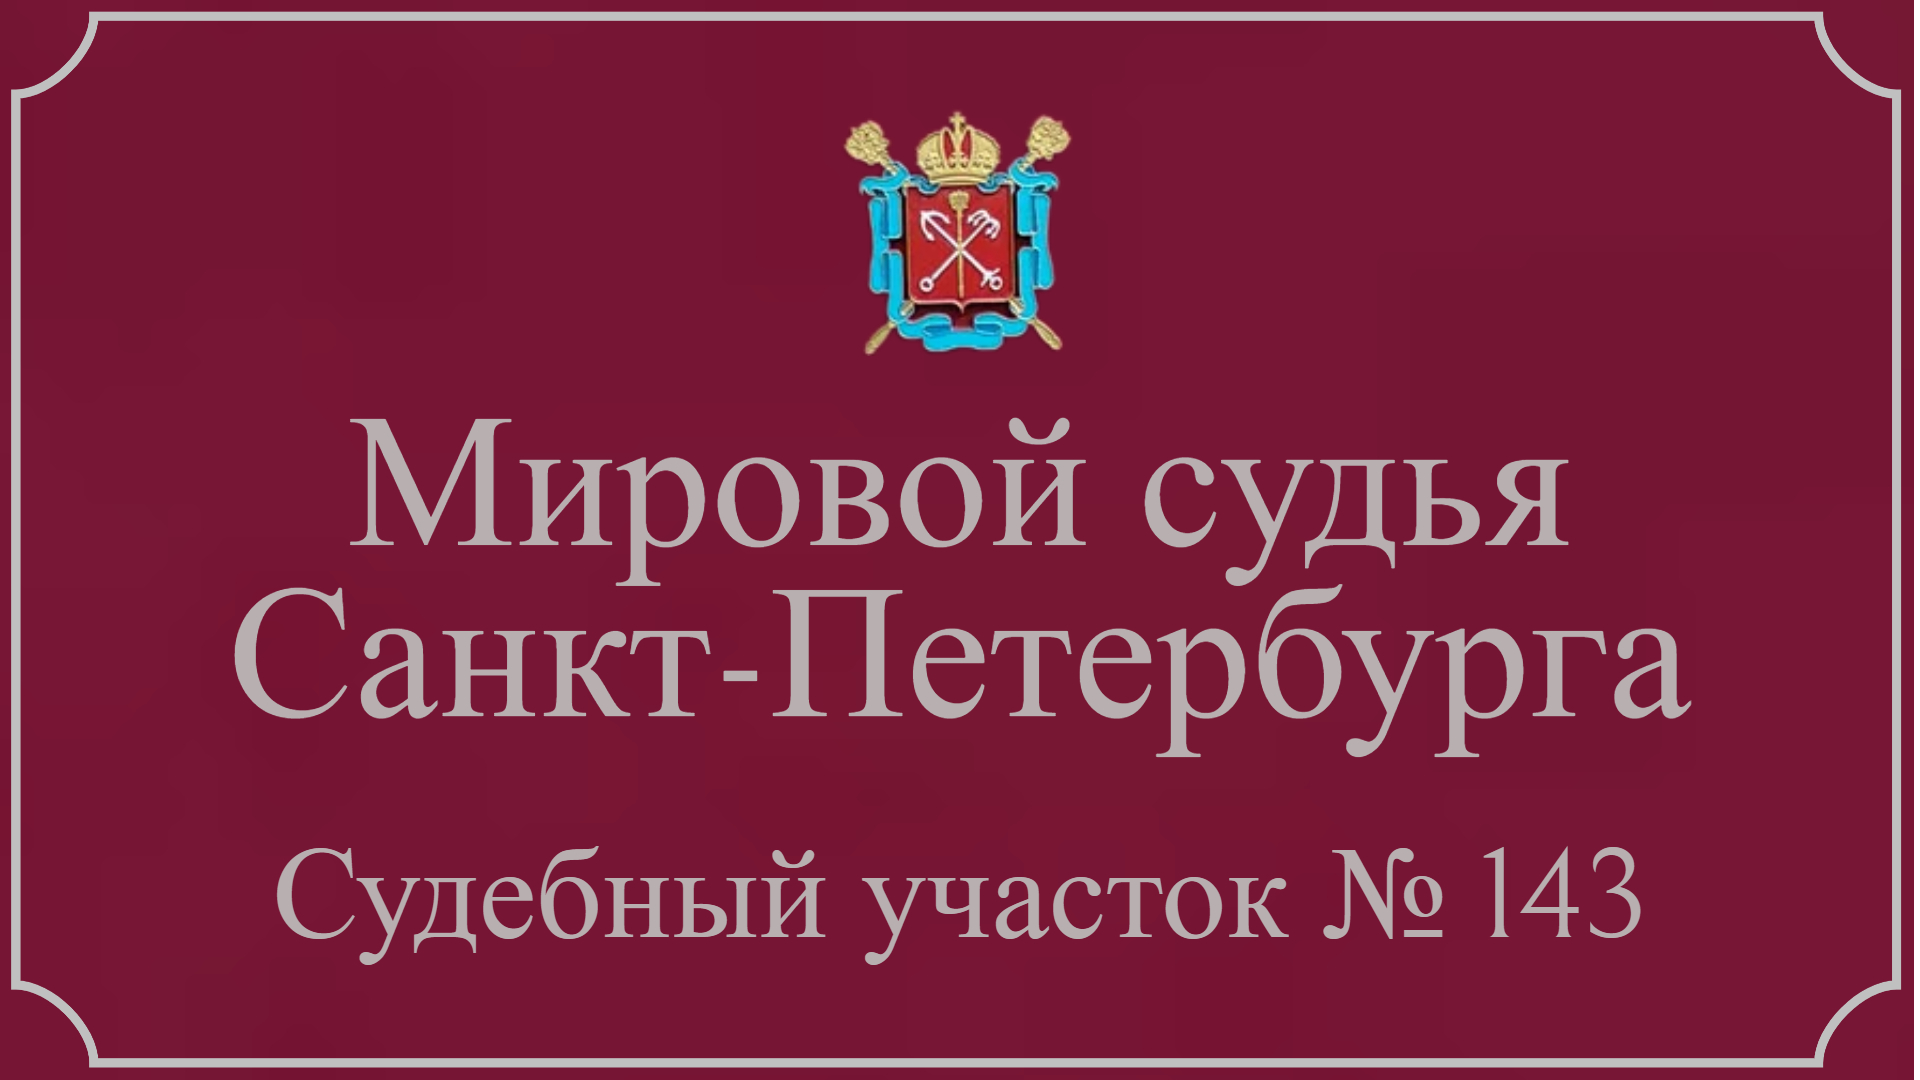 Информация по 143 судебному участку в Санкт-Петербурге.